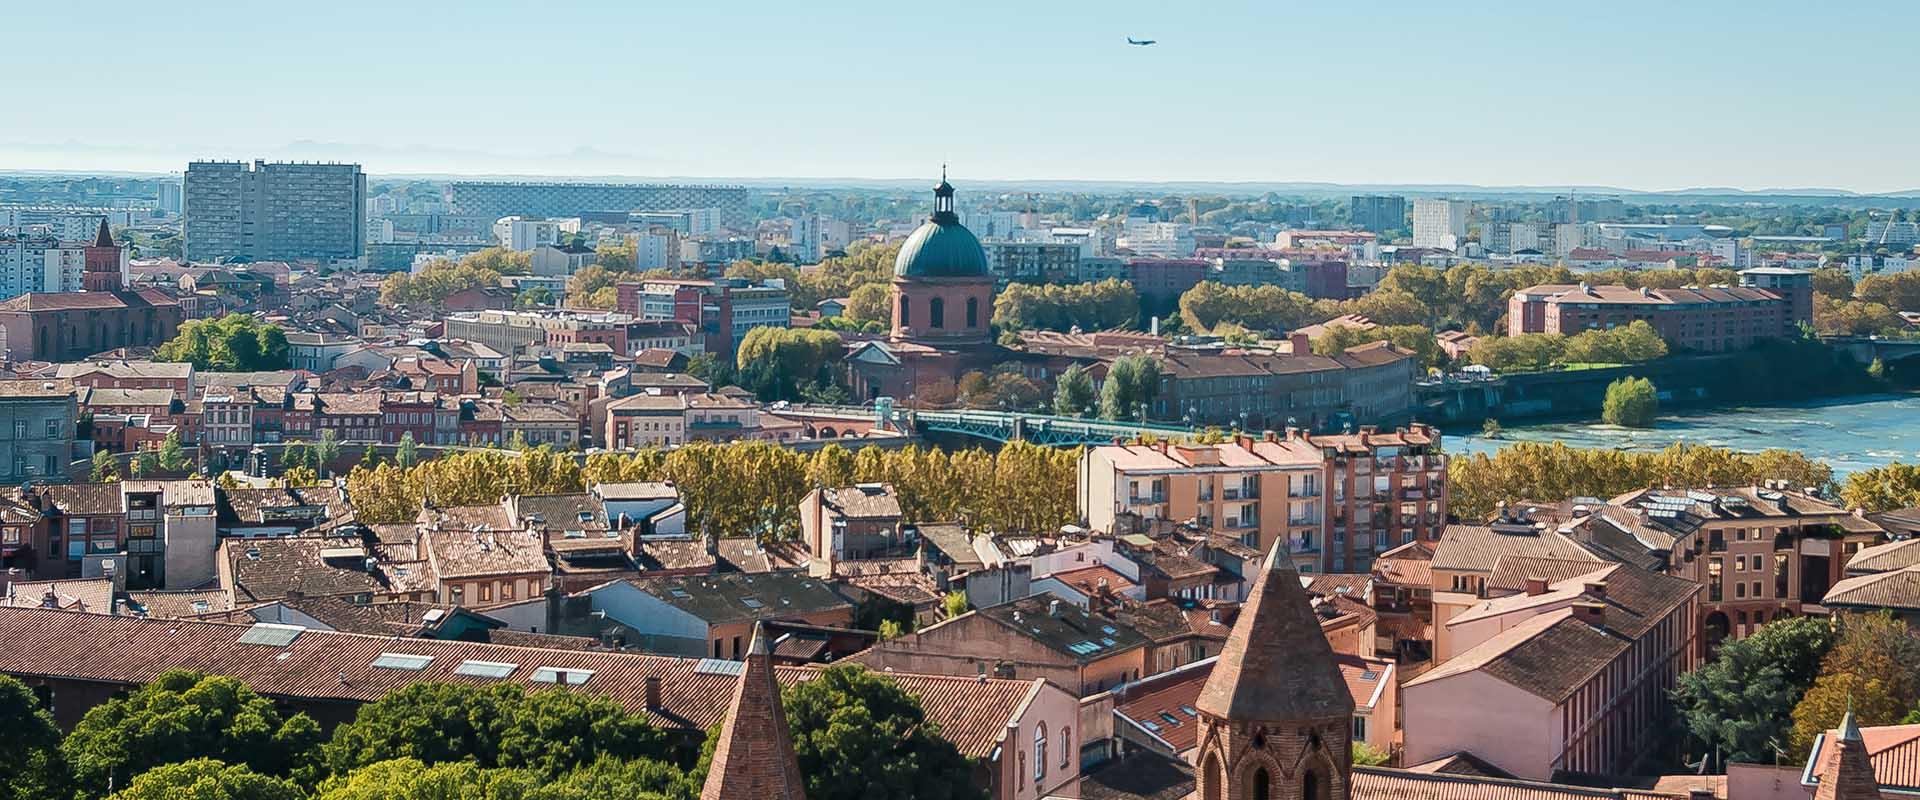 Les meilleurs quartiers de Toulouse à visiter